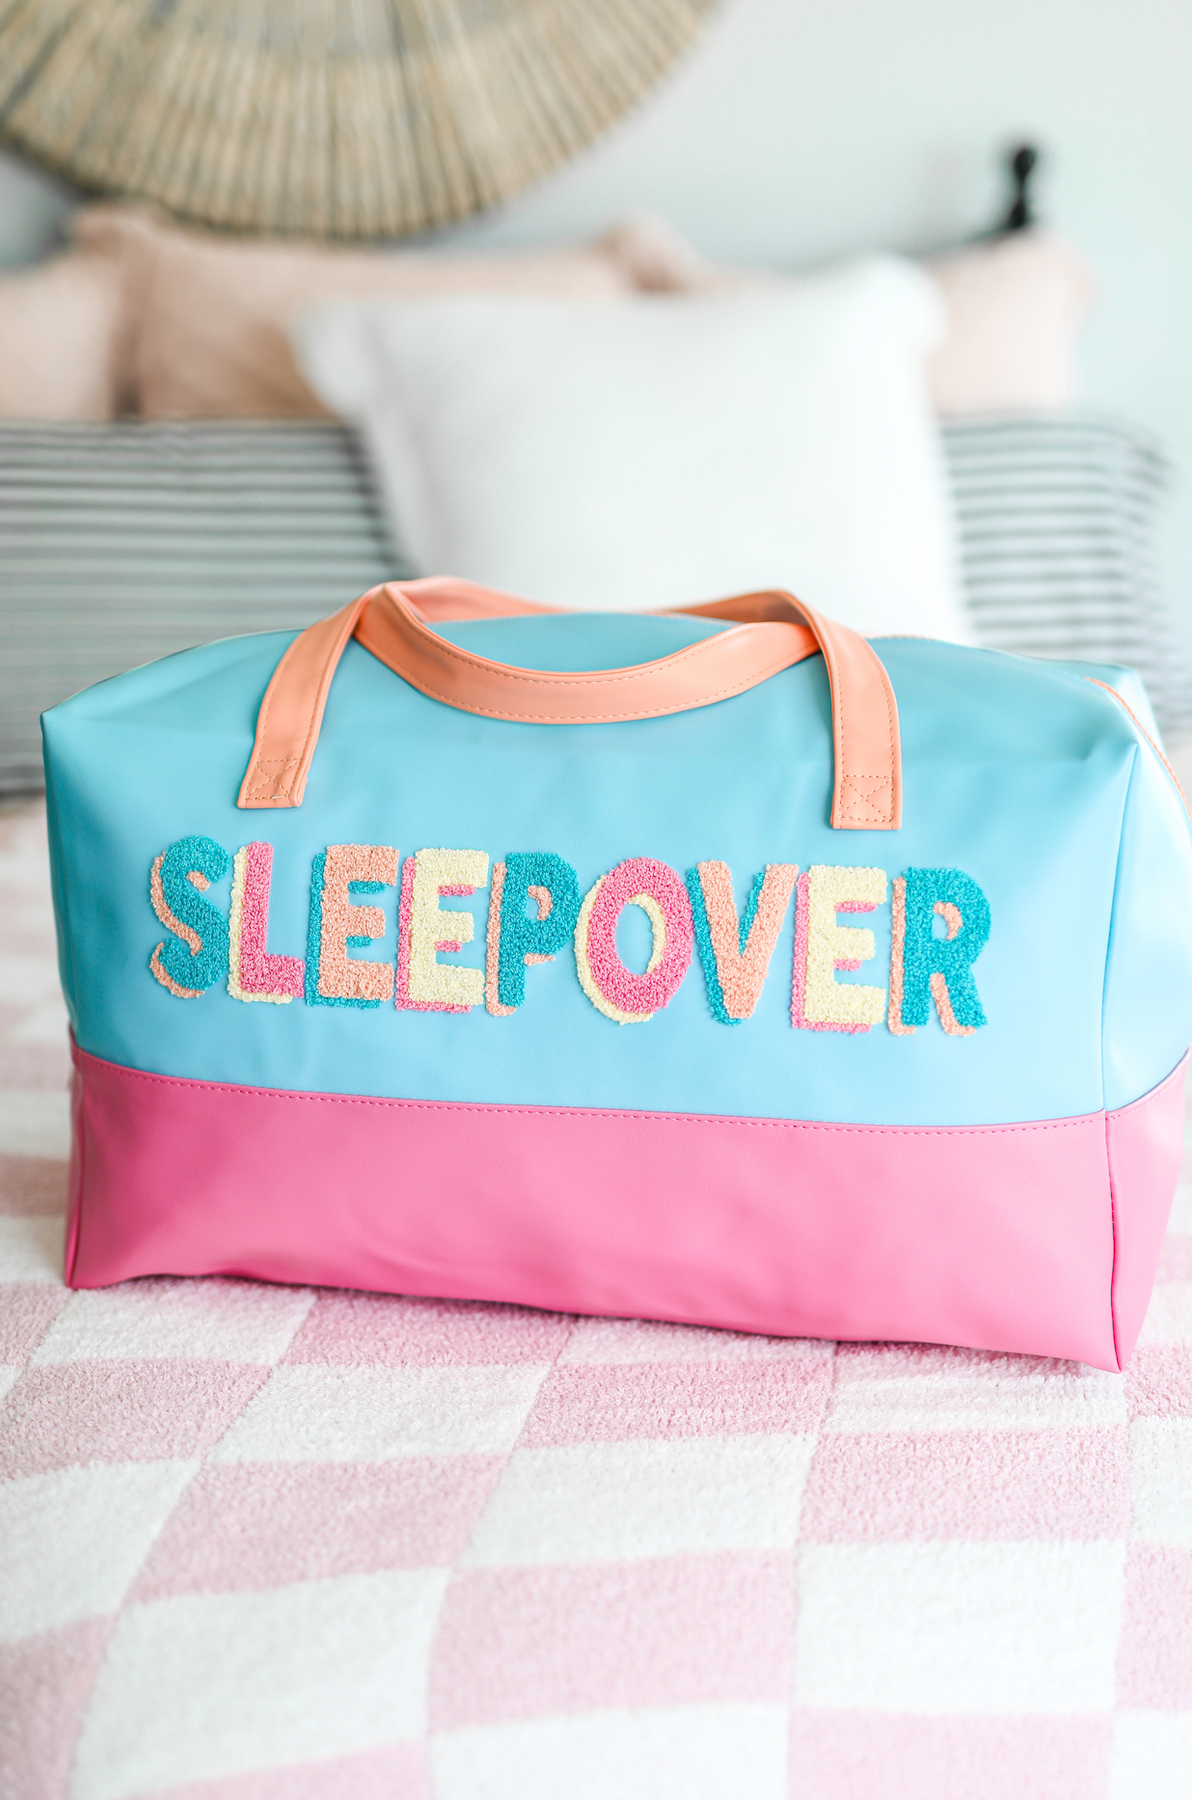 Sleepover Duffle Bag